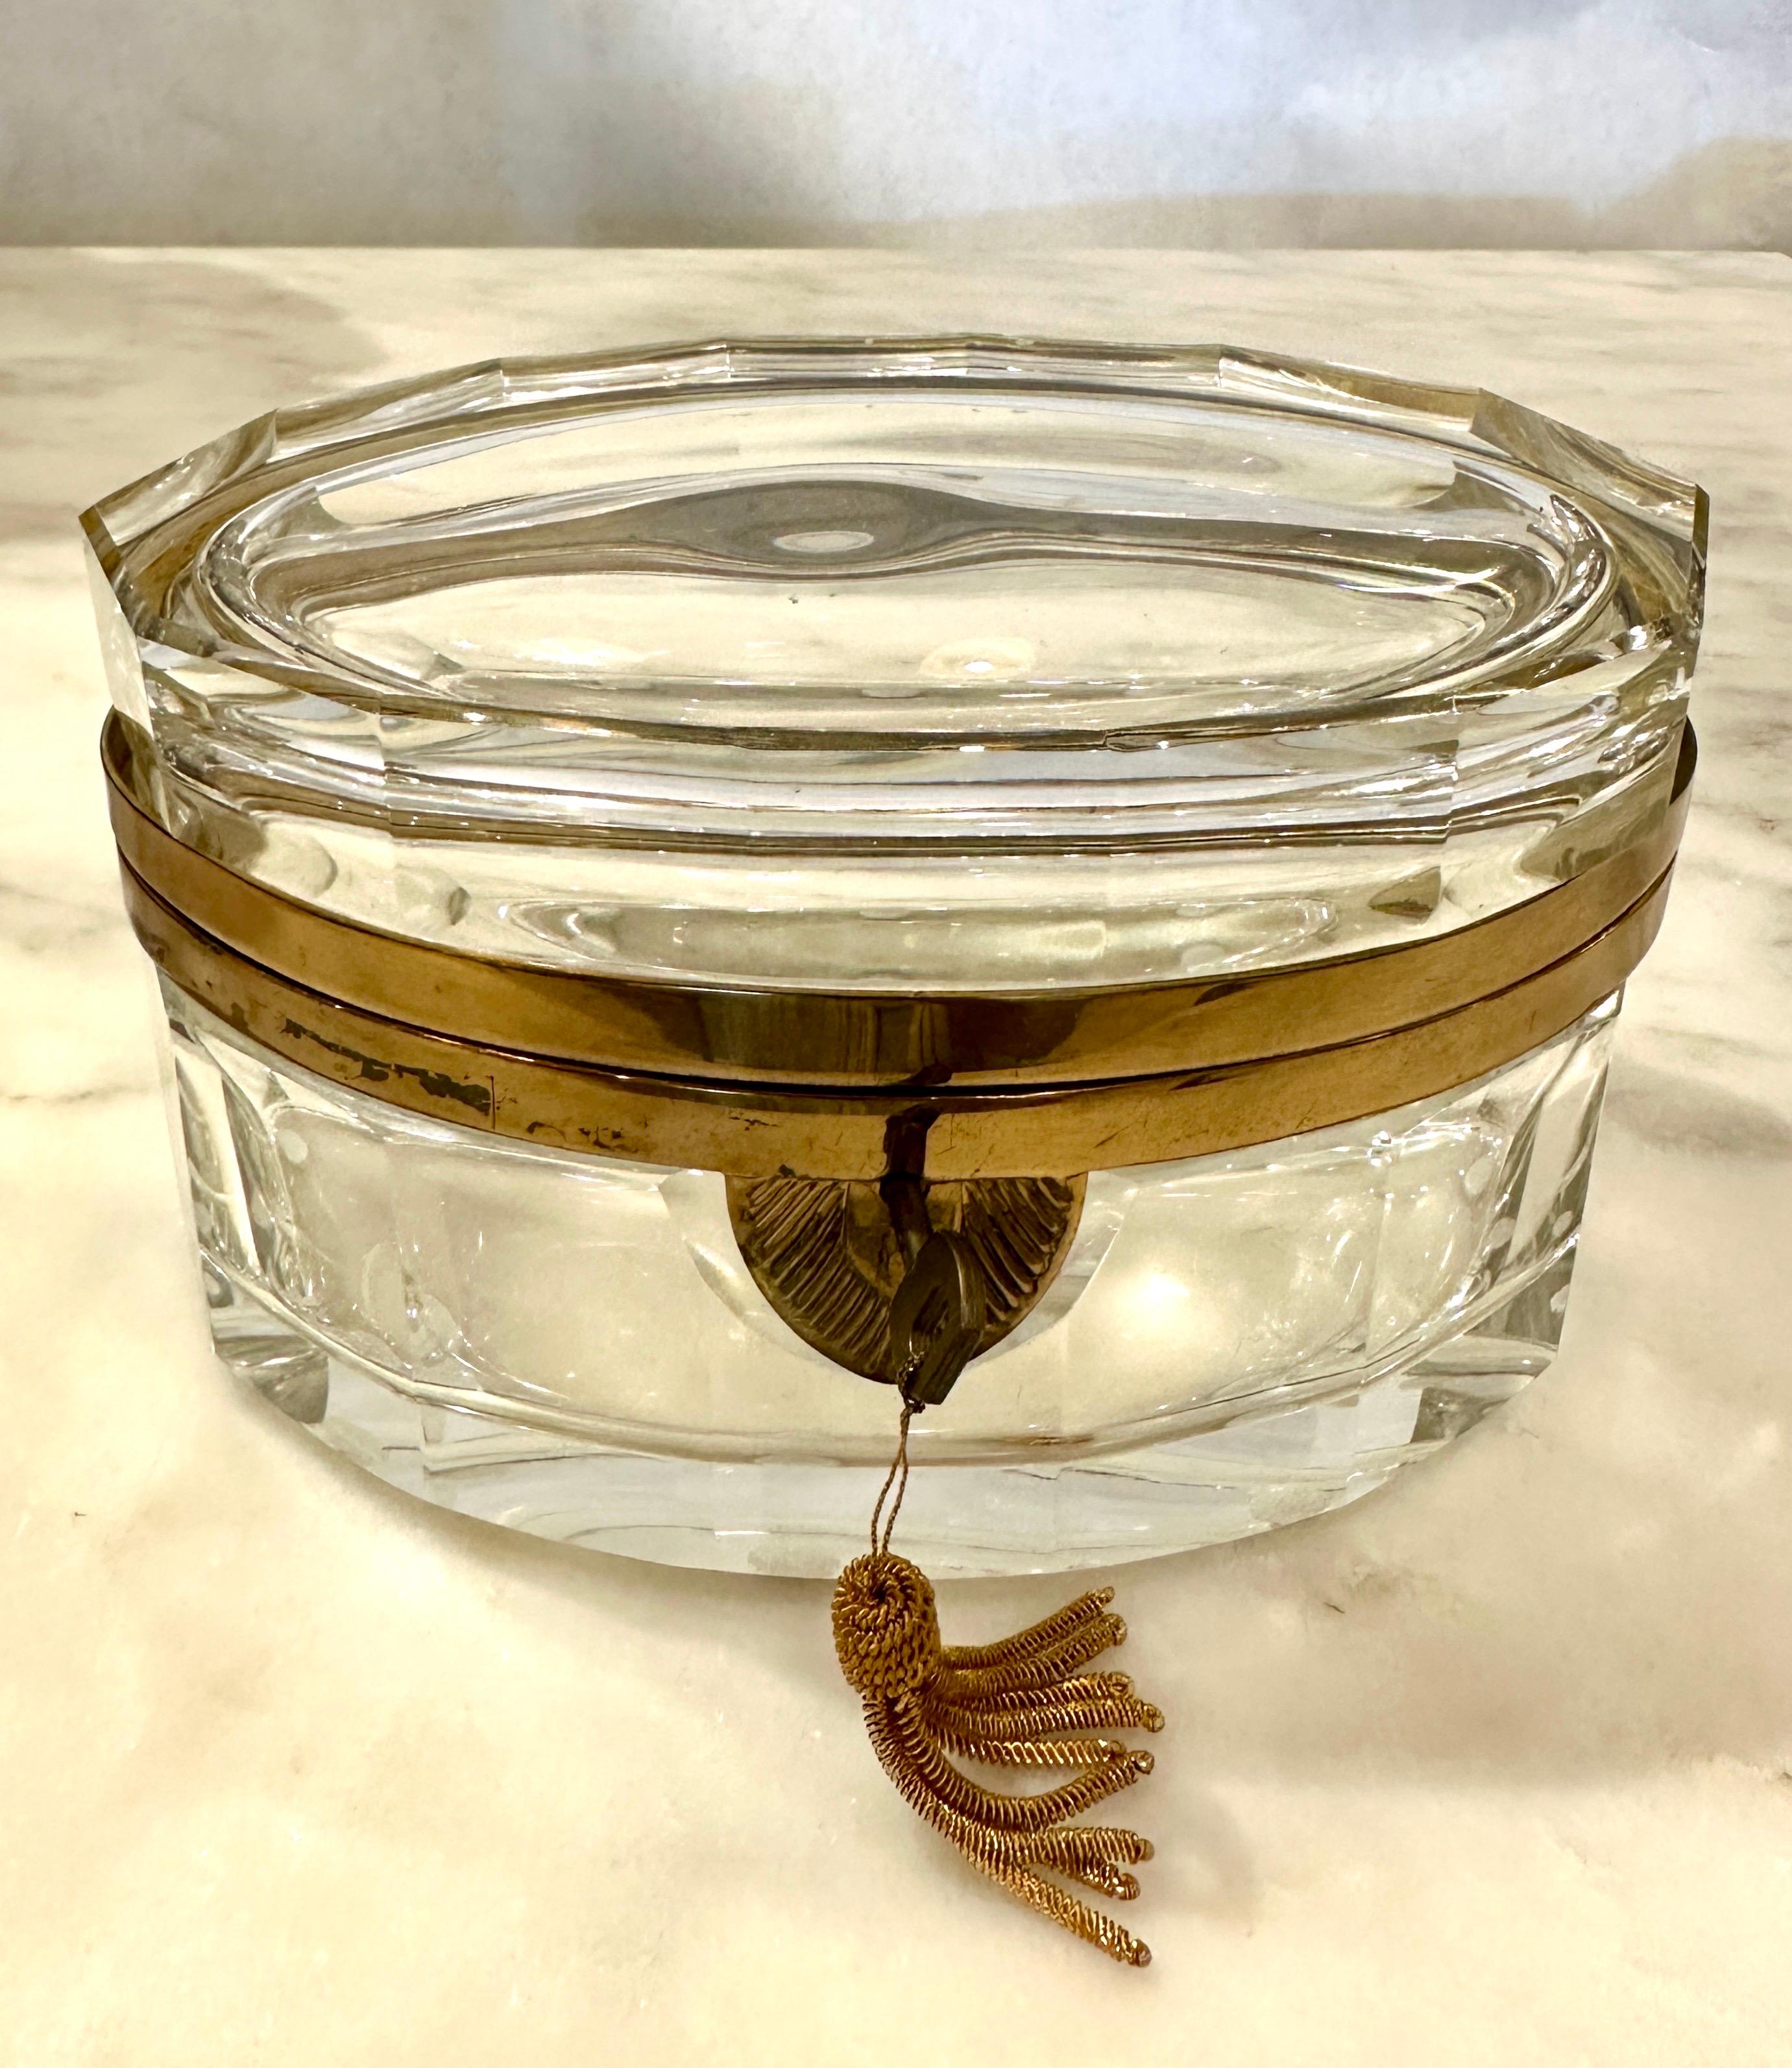 Cette magnifique boîte à charnière en verre de Murano est en verre clair facetté, avec une garniture en laiton et une clé décorative et un pompon d'origine.  Il s'agit d'un merveilleux accessoire de bureau ou de coiffeuse.  CET ARTICLE EST SITUÉ ET